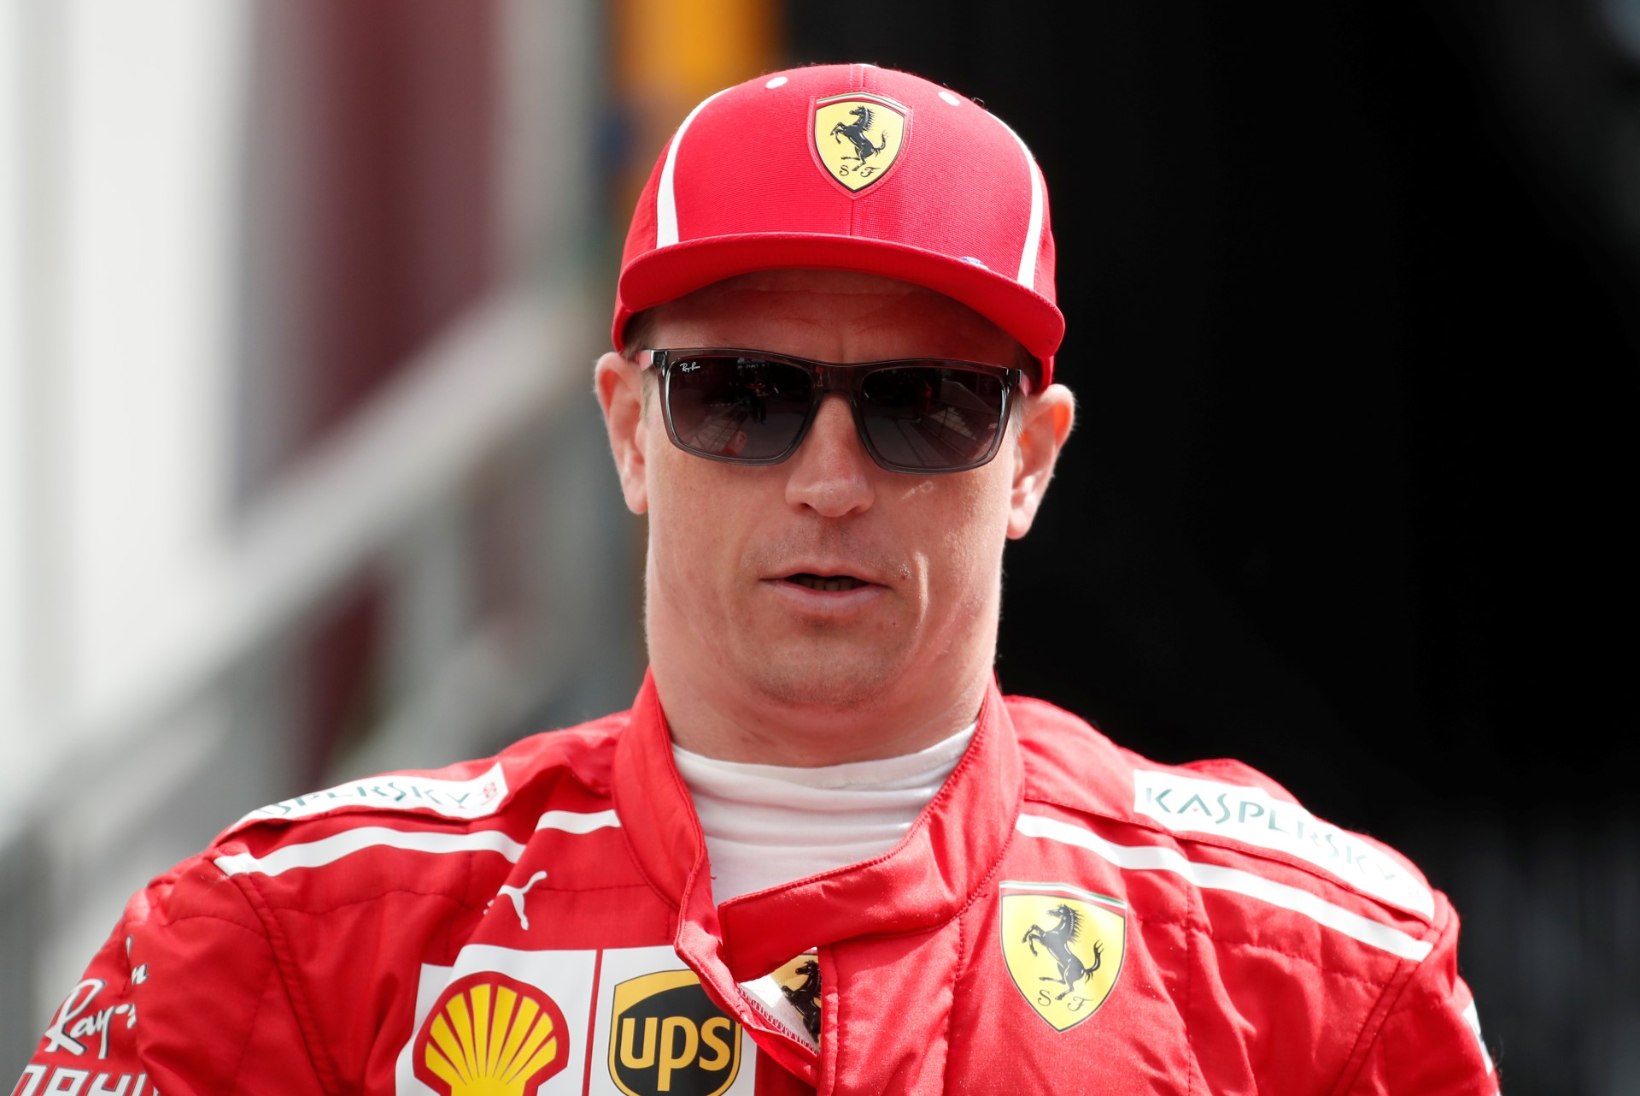 SAHINAD: Kimi Räikkönenist võib saada Tänaku meeskonnakaaslane